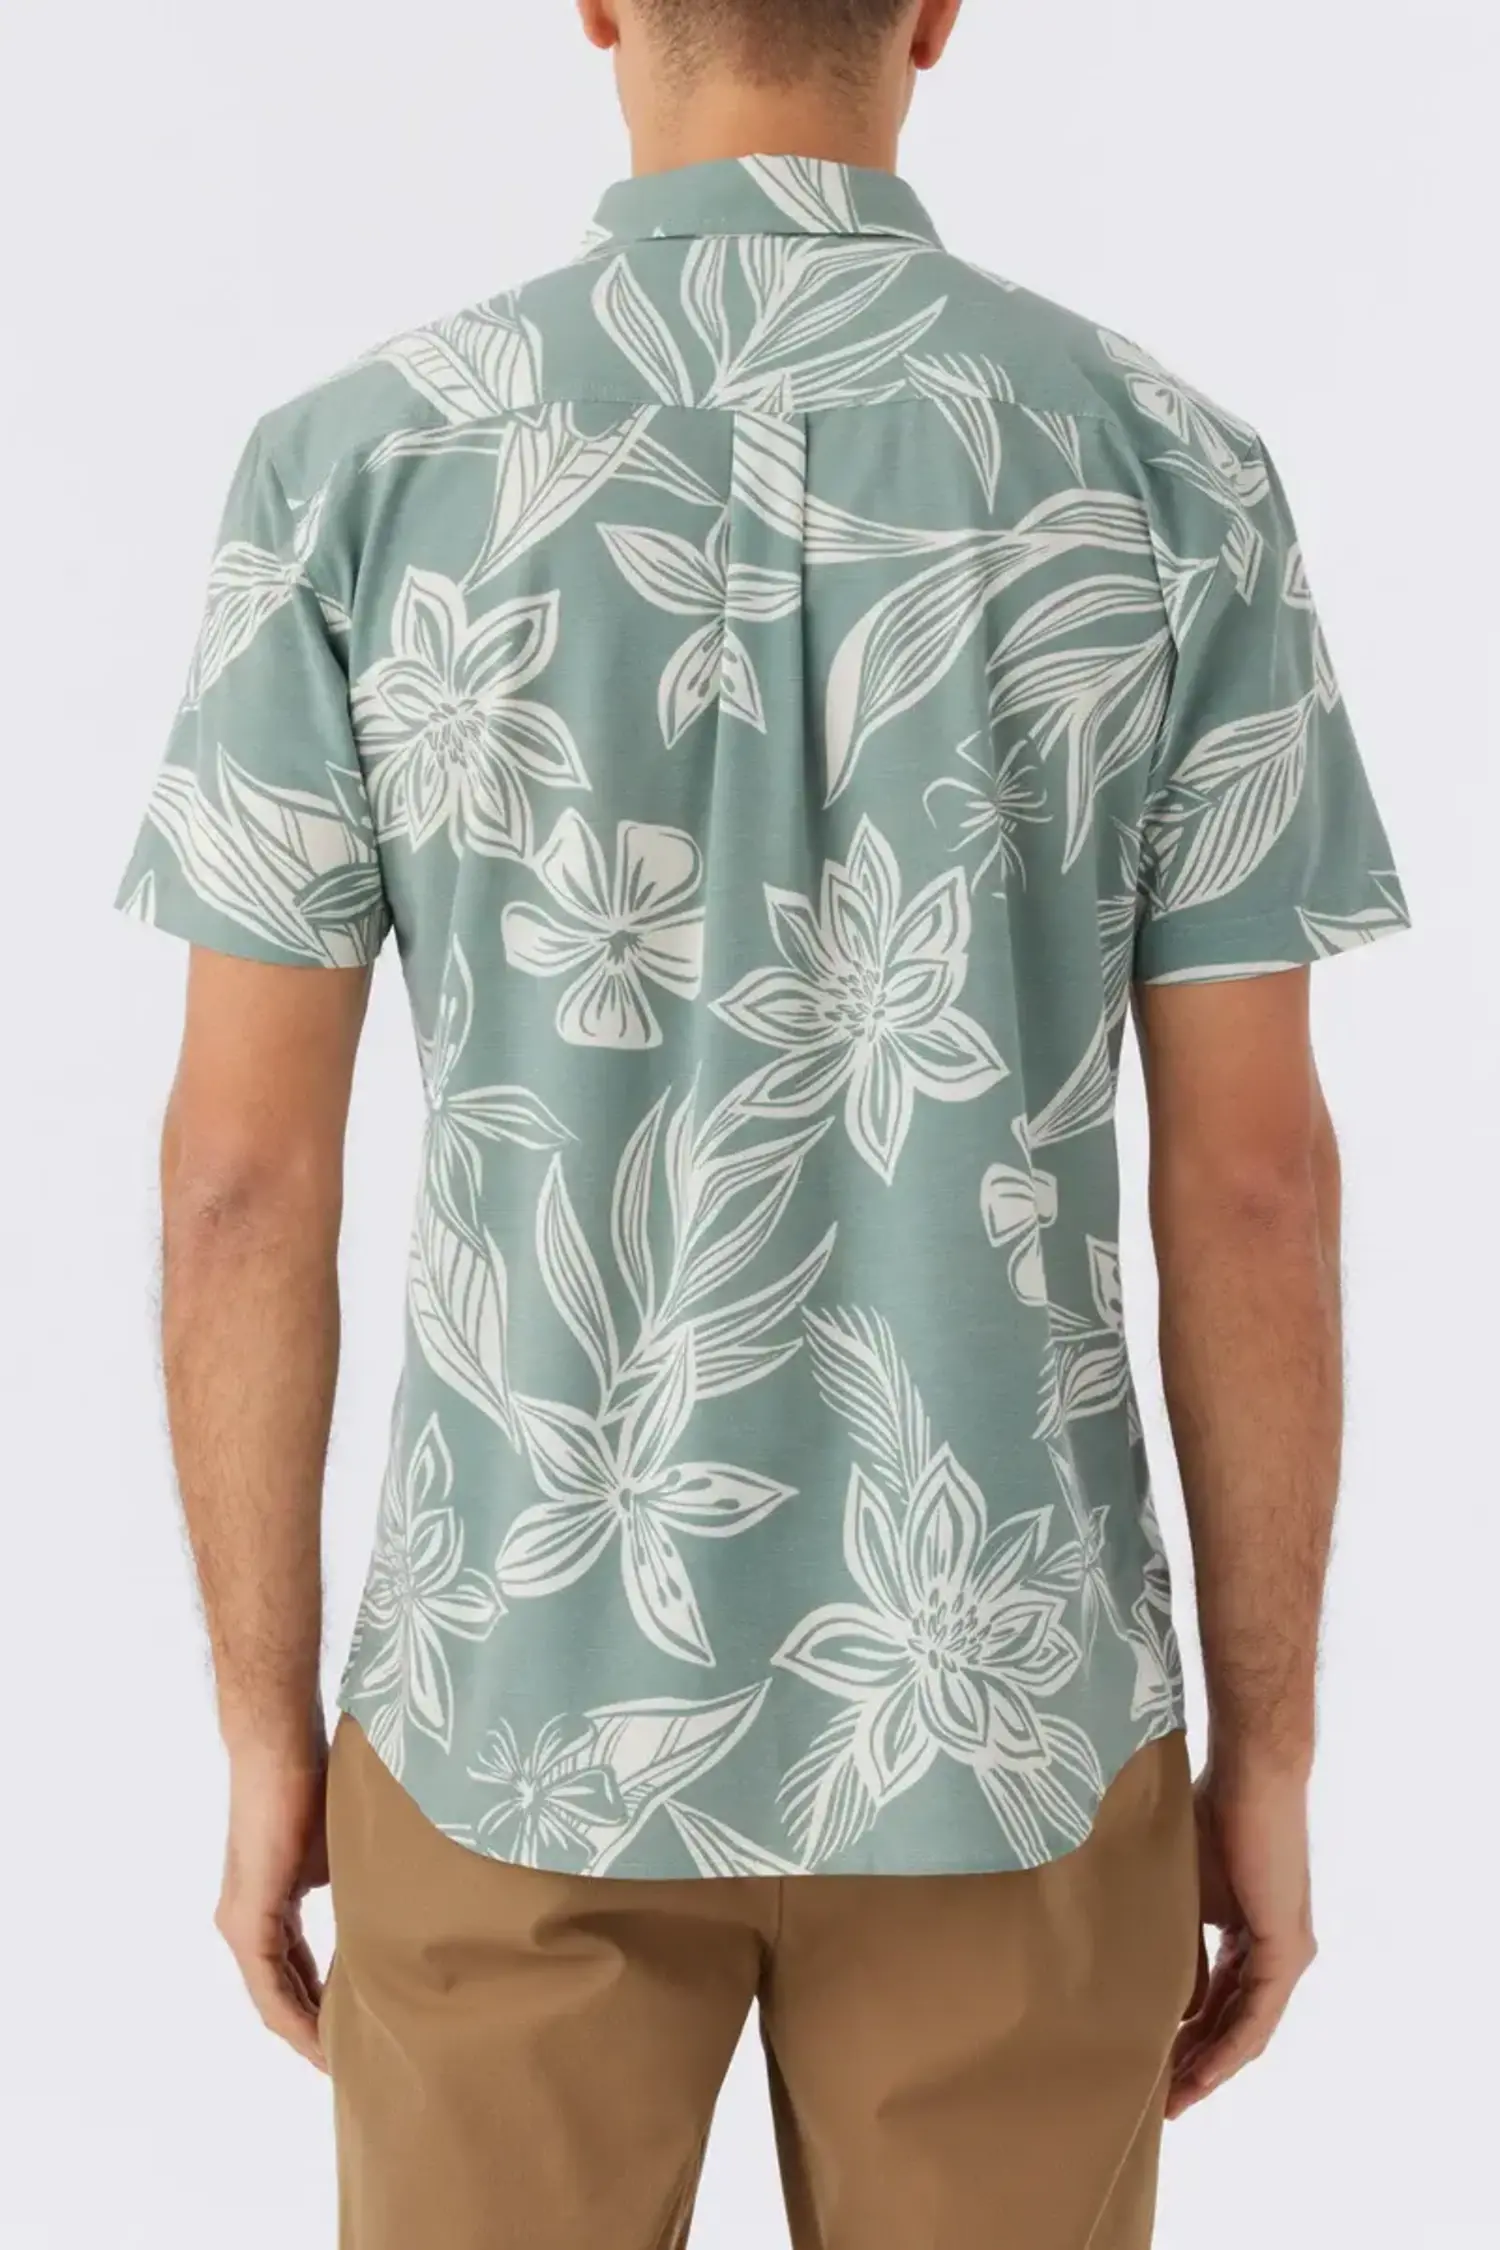 O'Neill Fishing Lures Shirt Mens XL Button Up Short Sleeve Gray Blue  #ONeill #Hawaiian #Casual